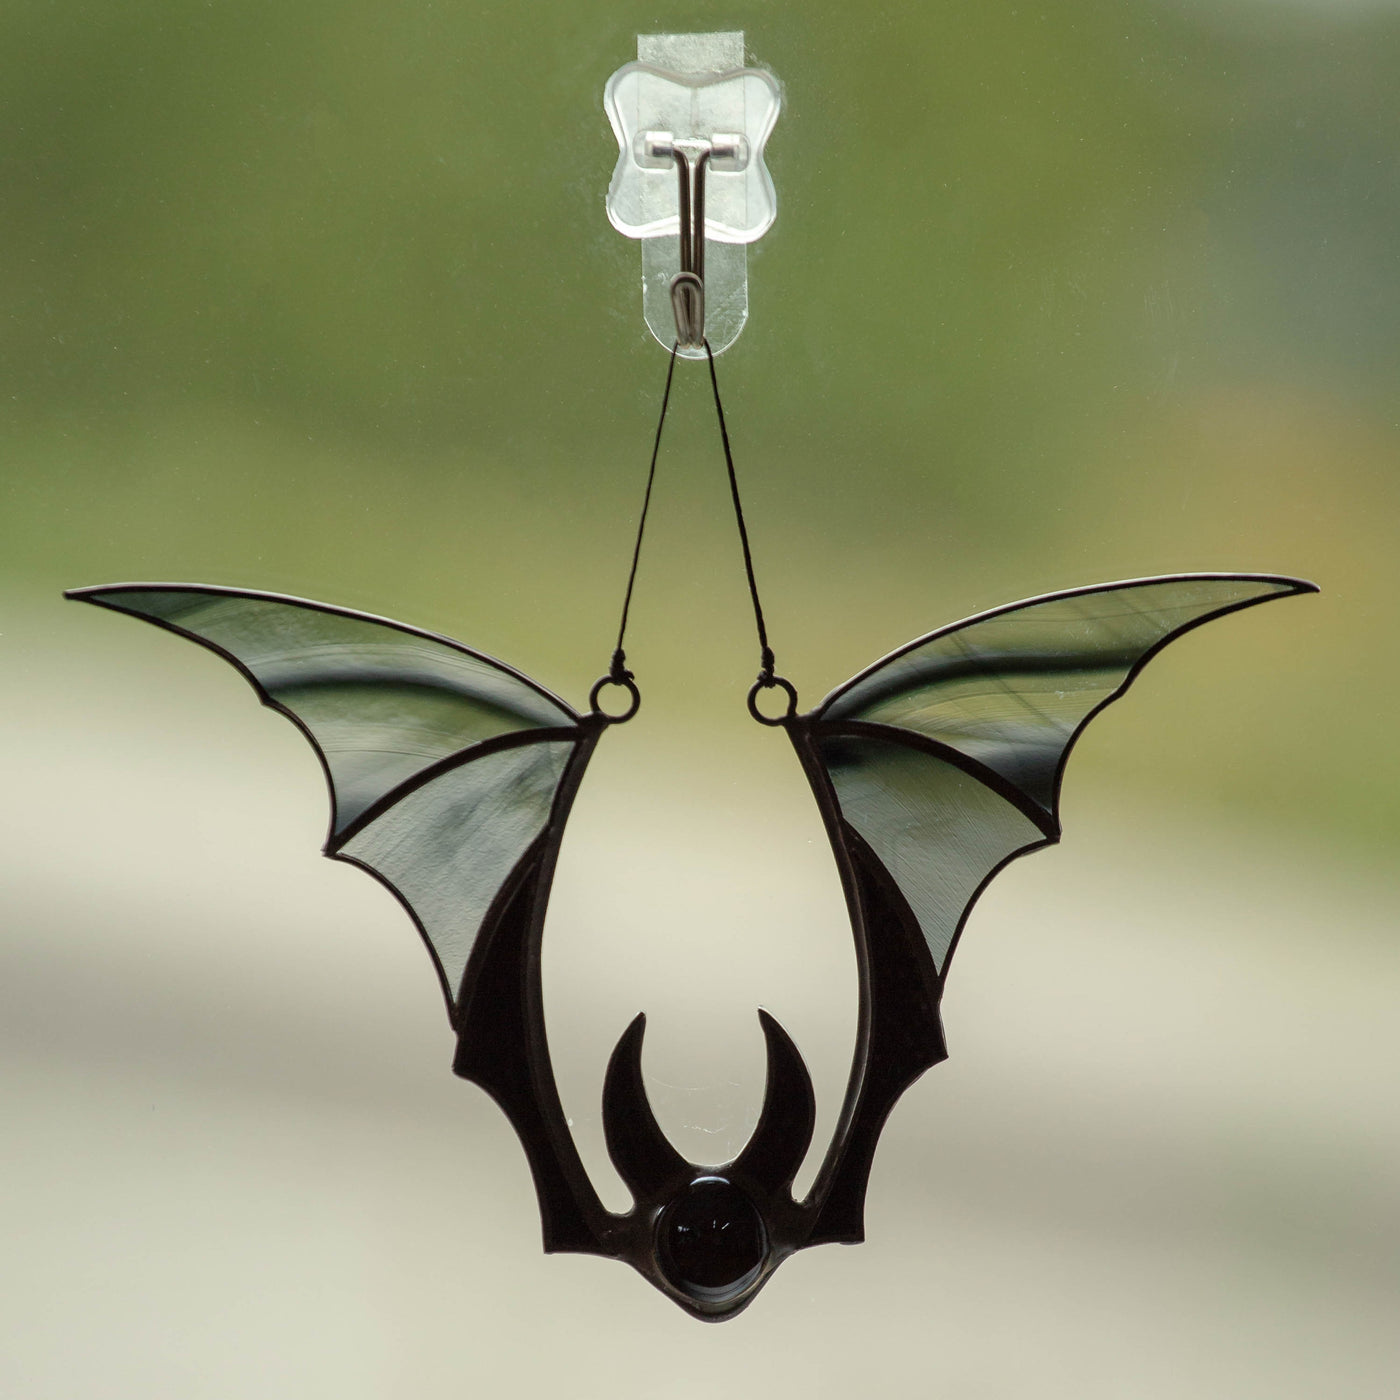 Horror stained glass black bat suncatcher